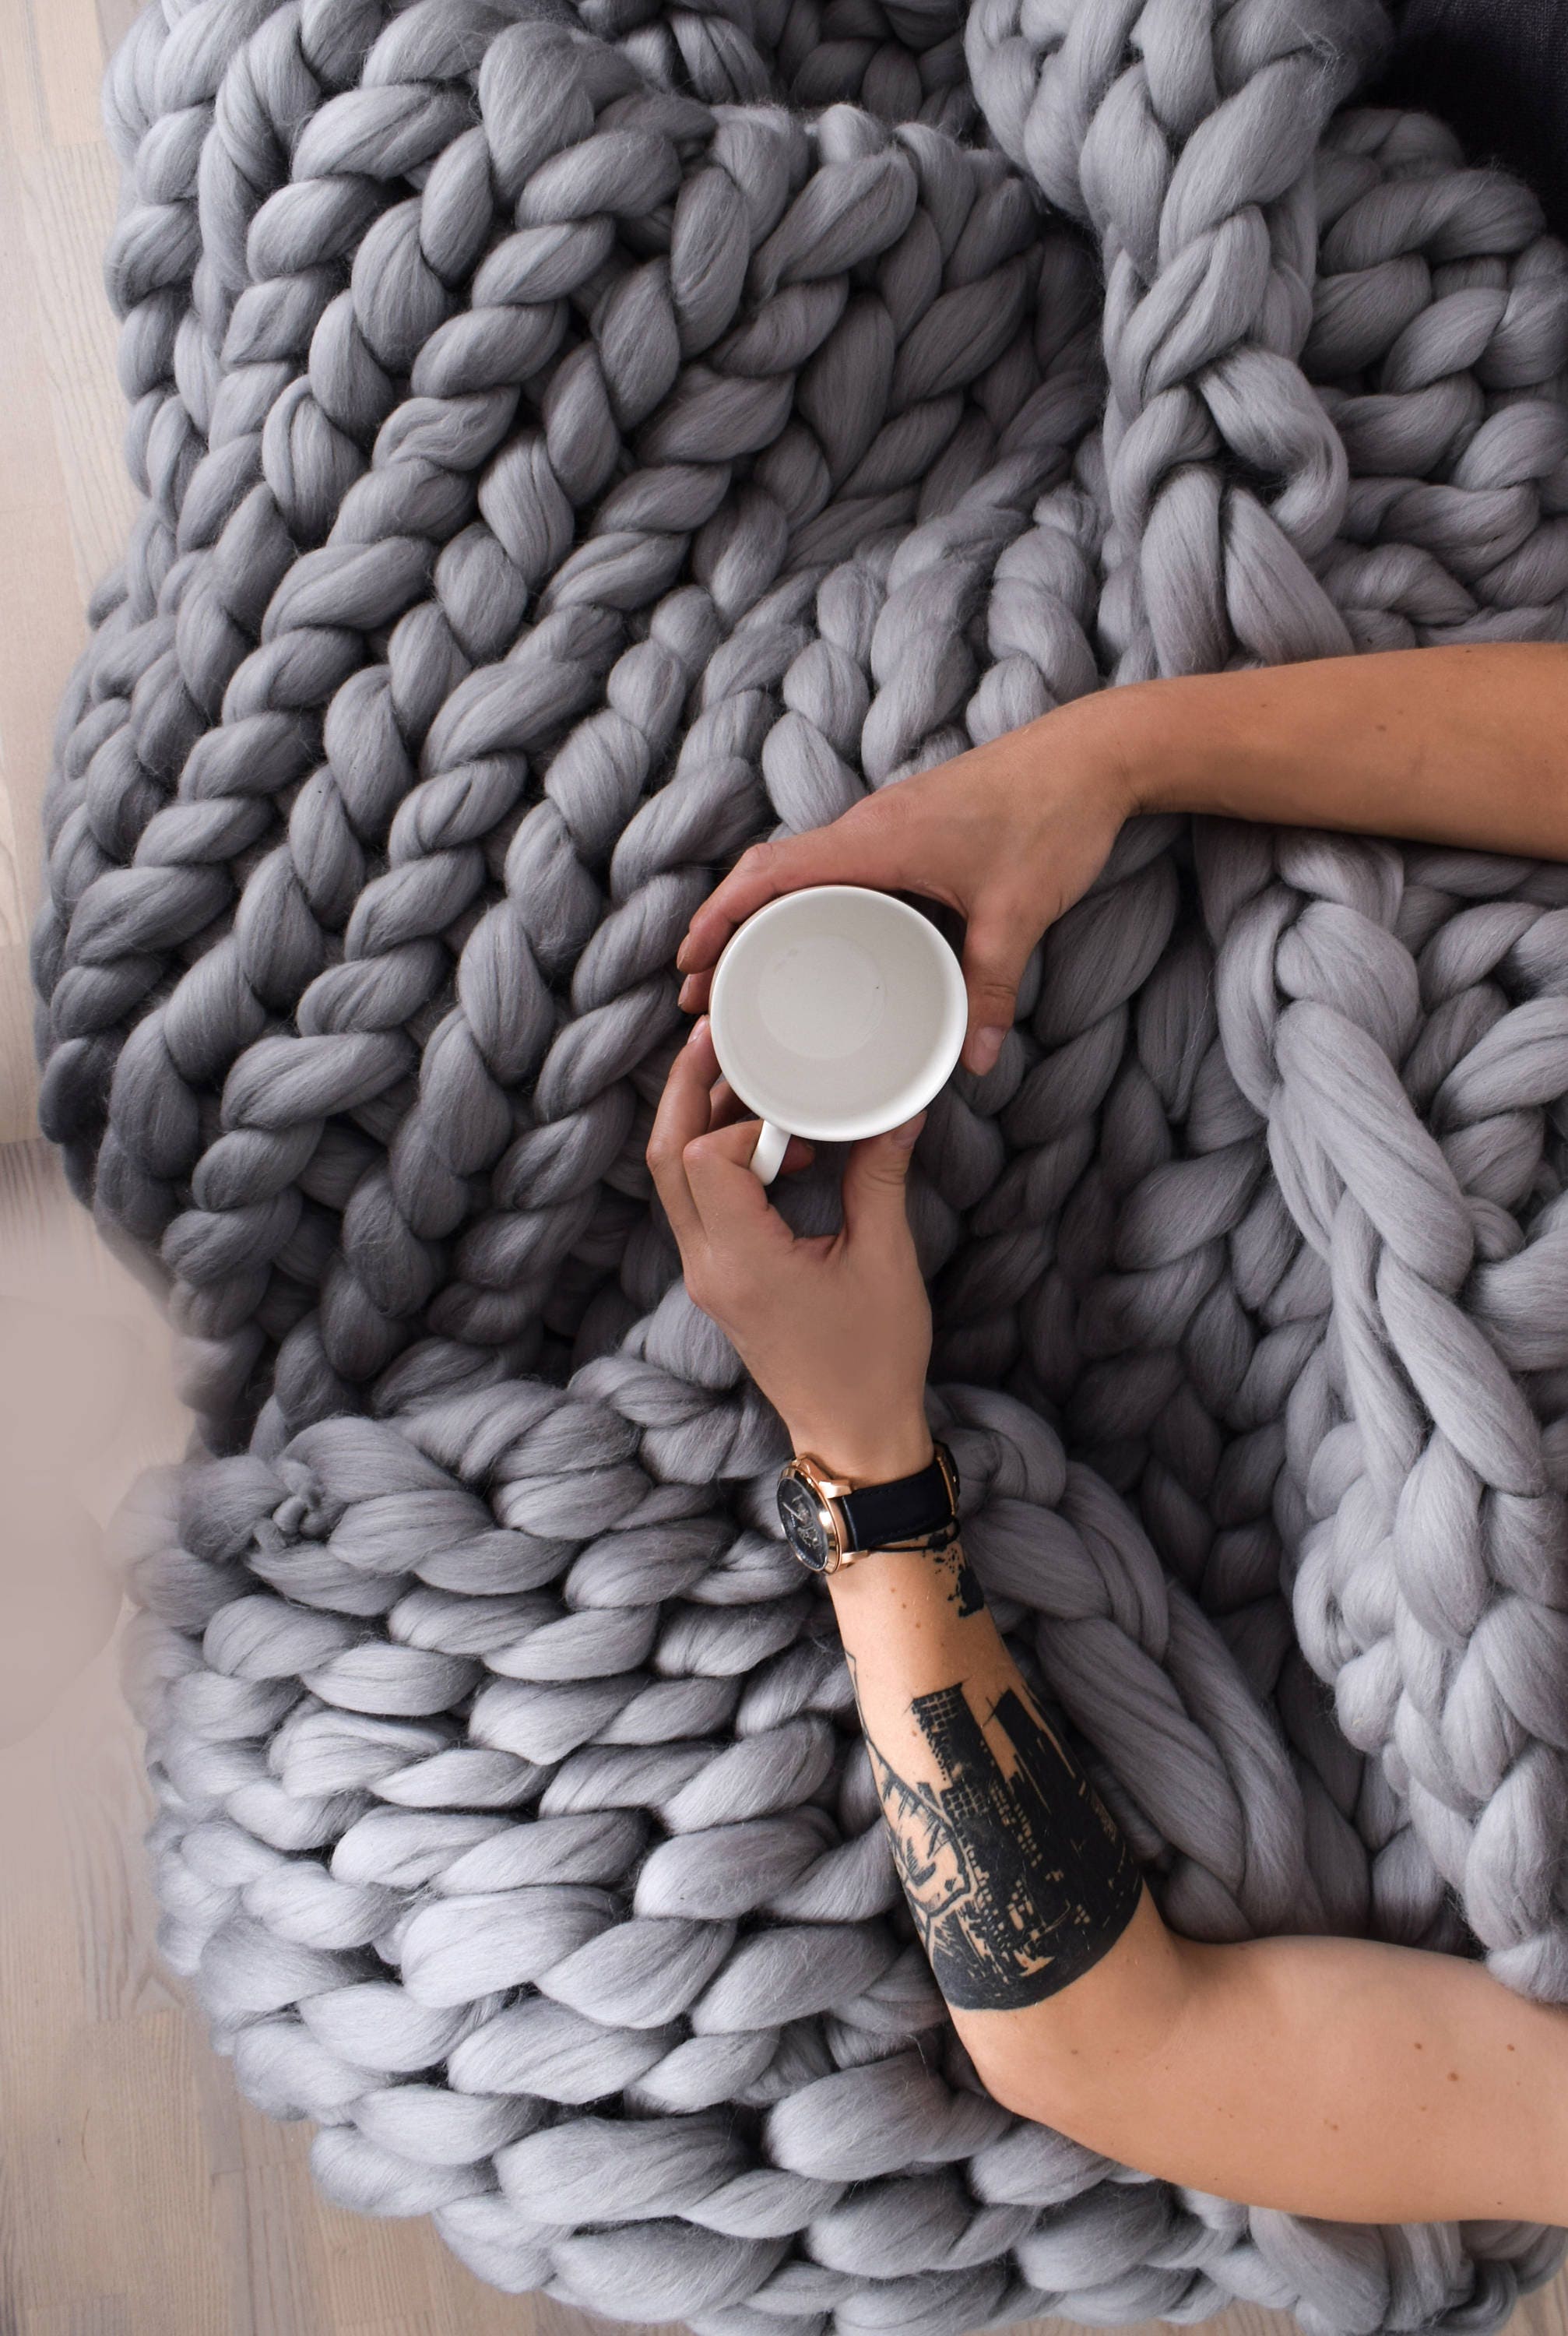 YDxl Hand-knit Woven Thread Thick Basket Blanket Braided DIY Crochet Cloth  Fancy Yarn Grey One Size 